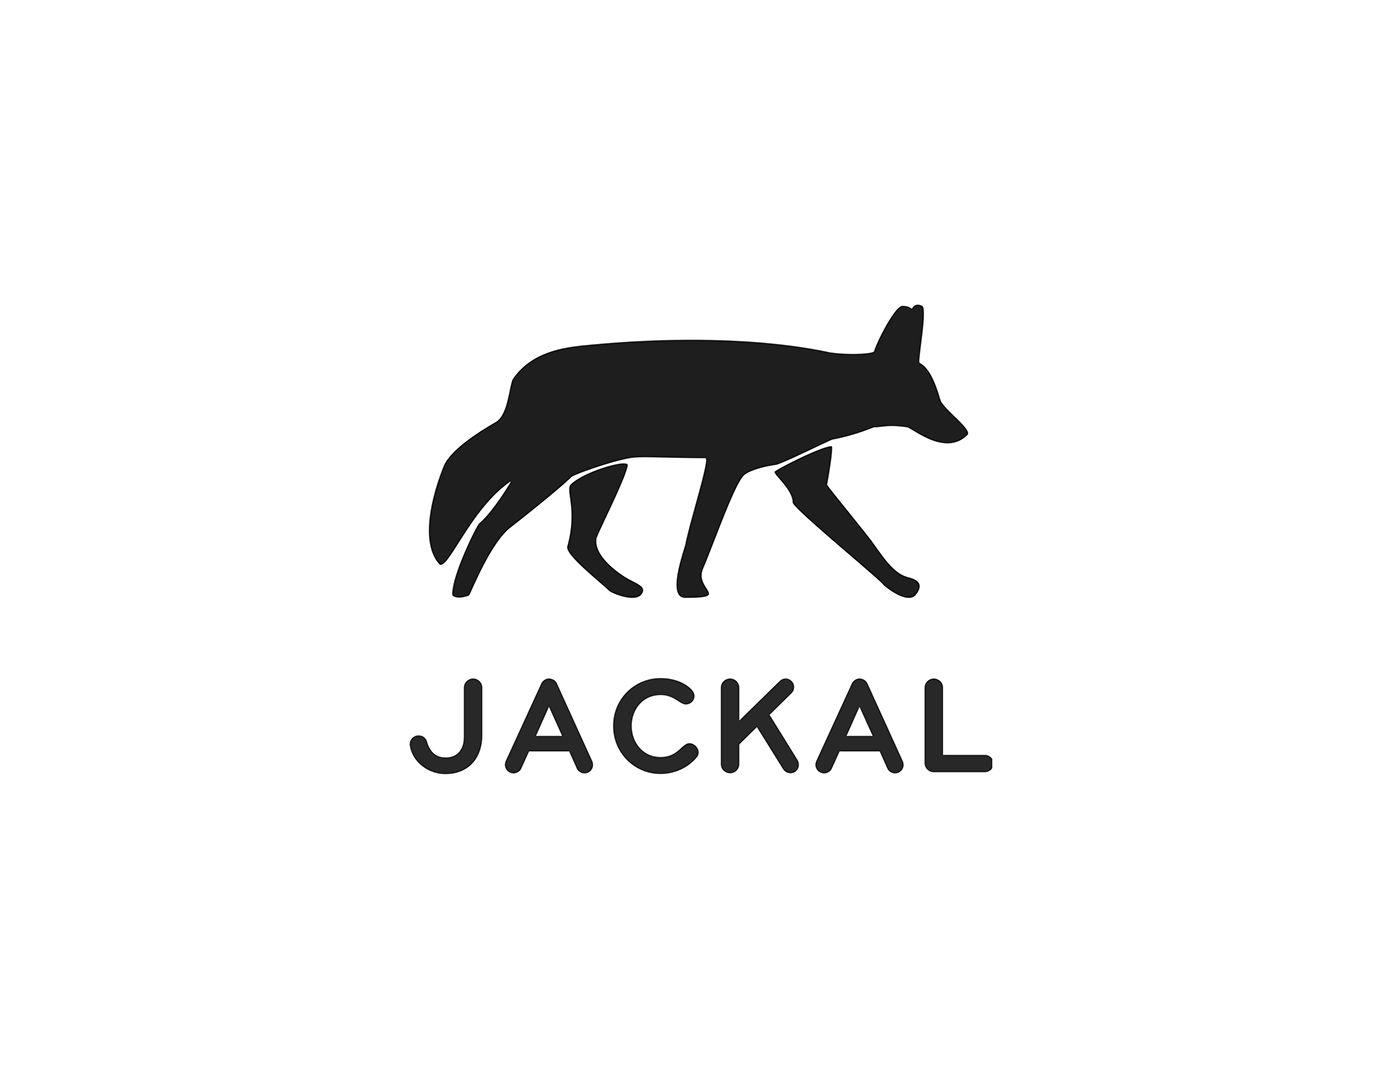 Jackal Logo - Logos - Jackal on Behance